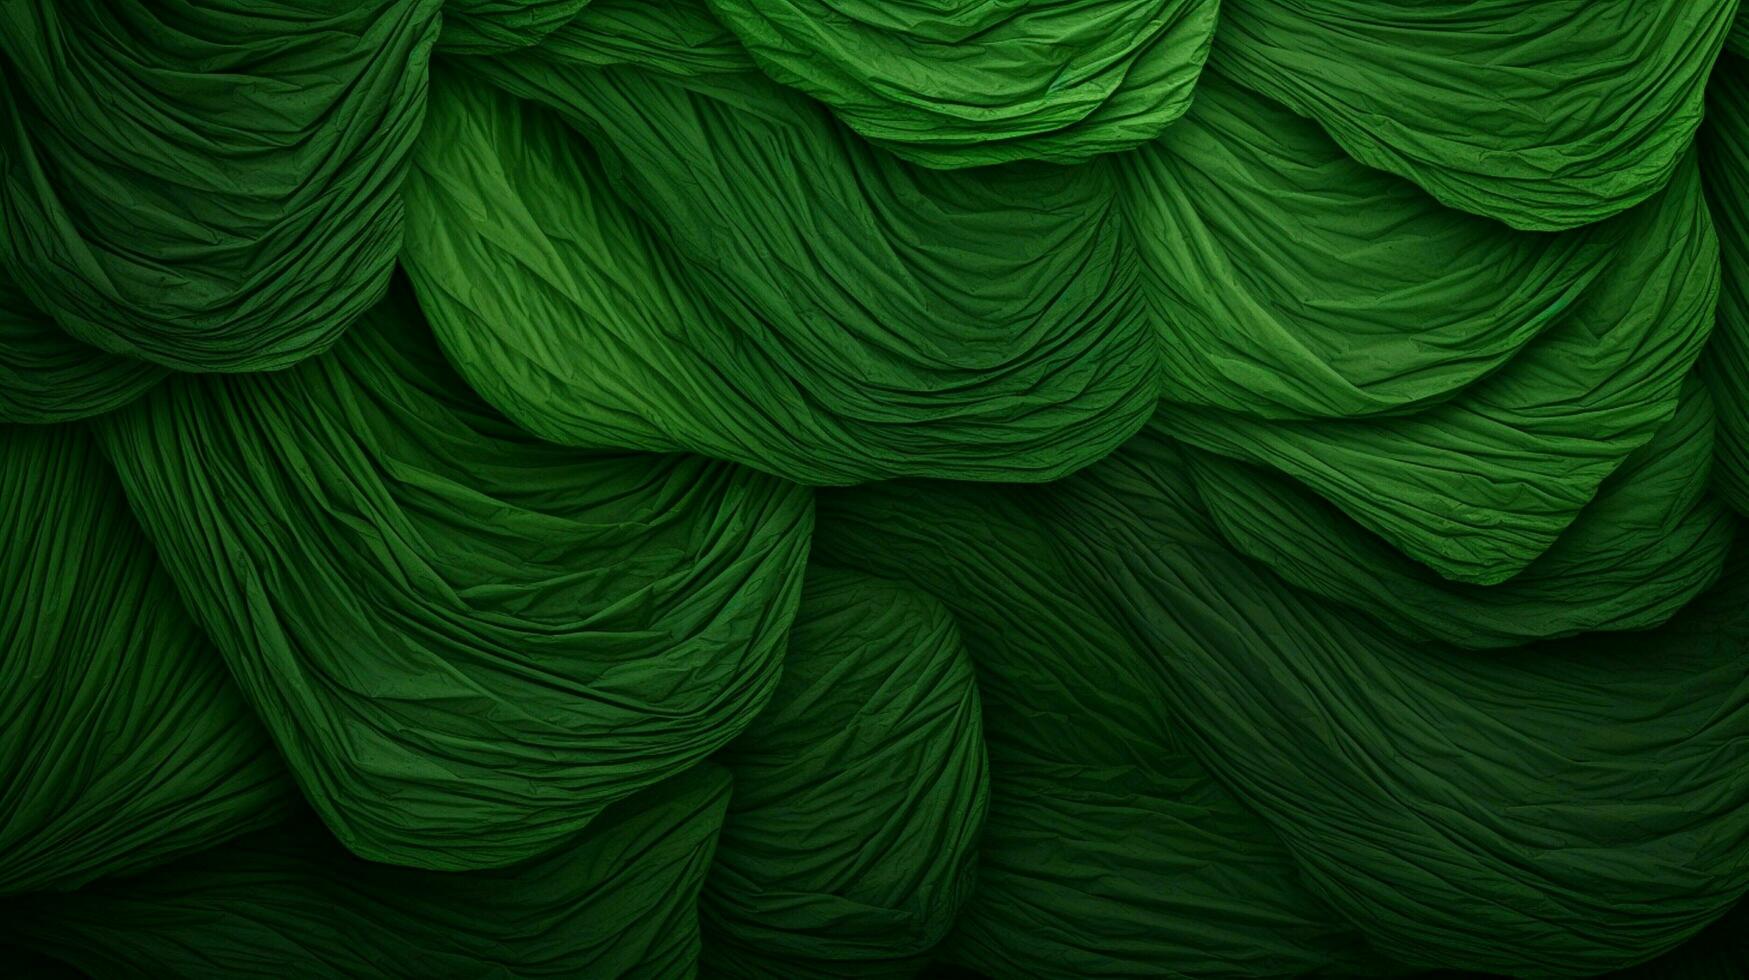 verde textura alto calidad foto